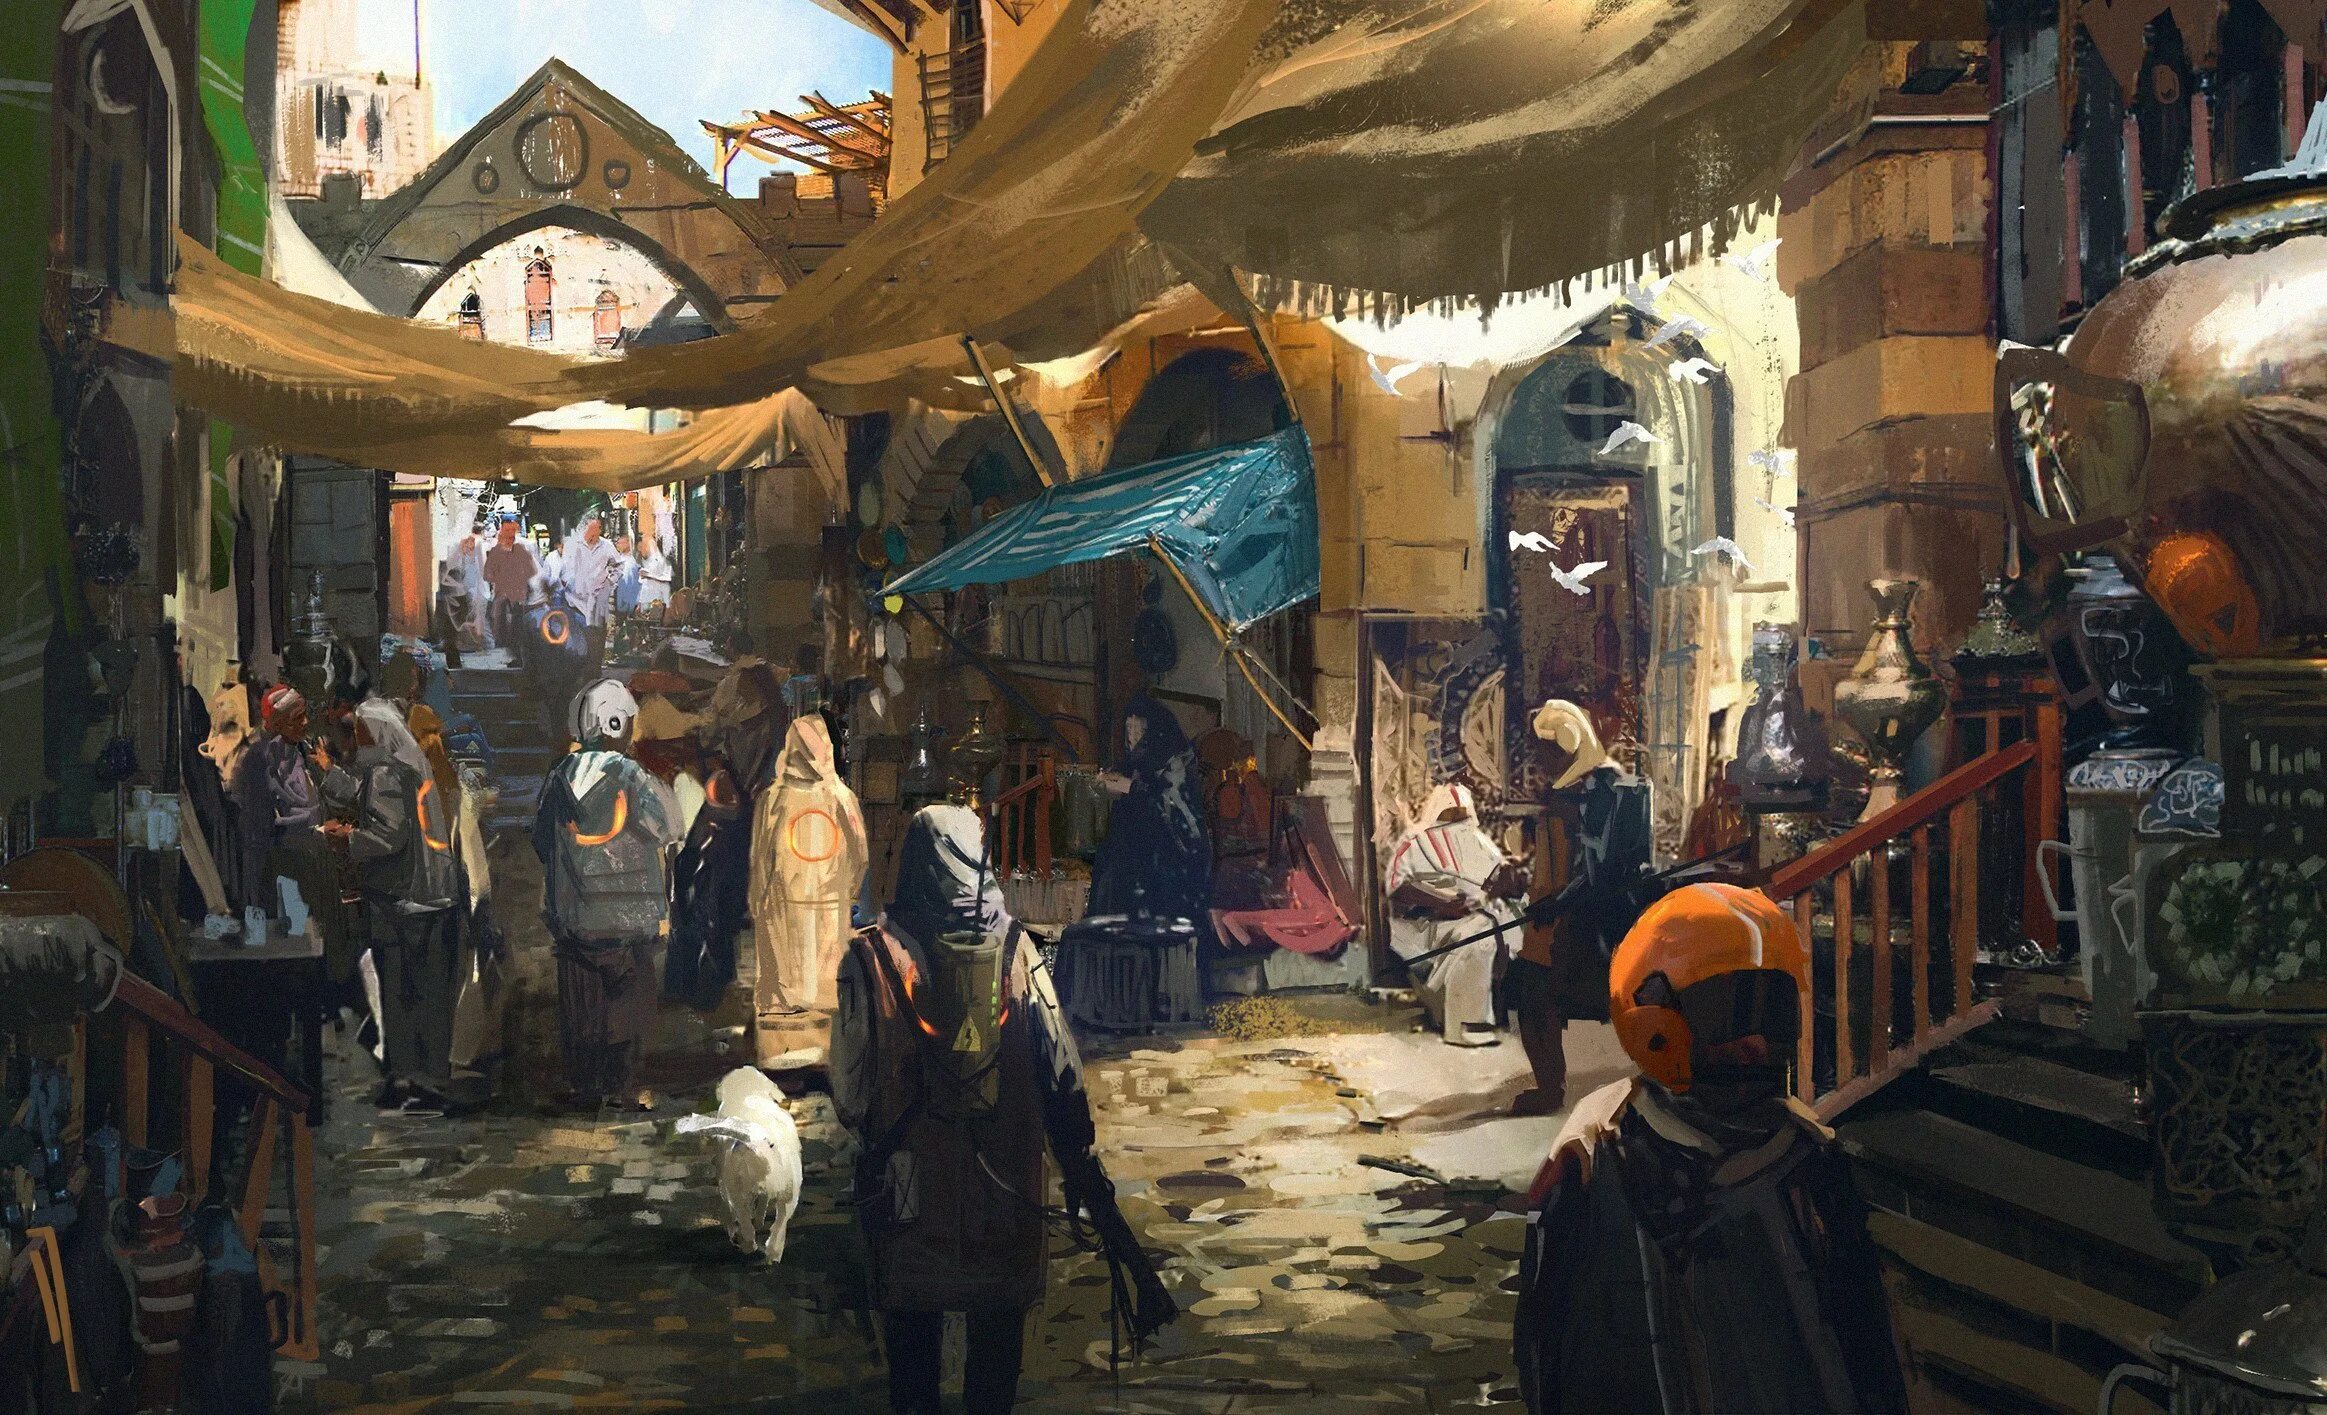 Средневековый торговый город концепт арт. Фэнтези арт рынок шатров. Арбаский торговец концепт арт. Средневековый рынок Италия.